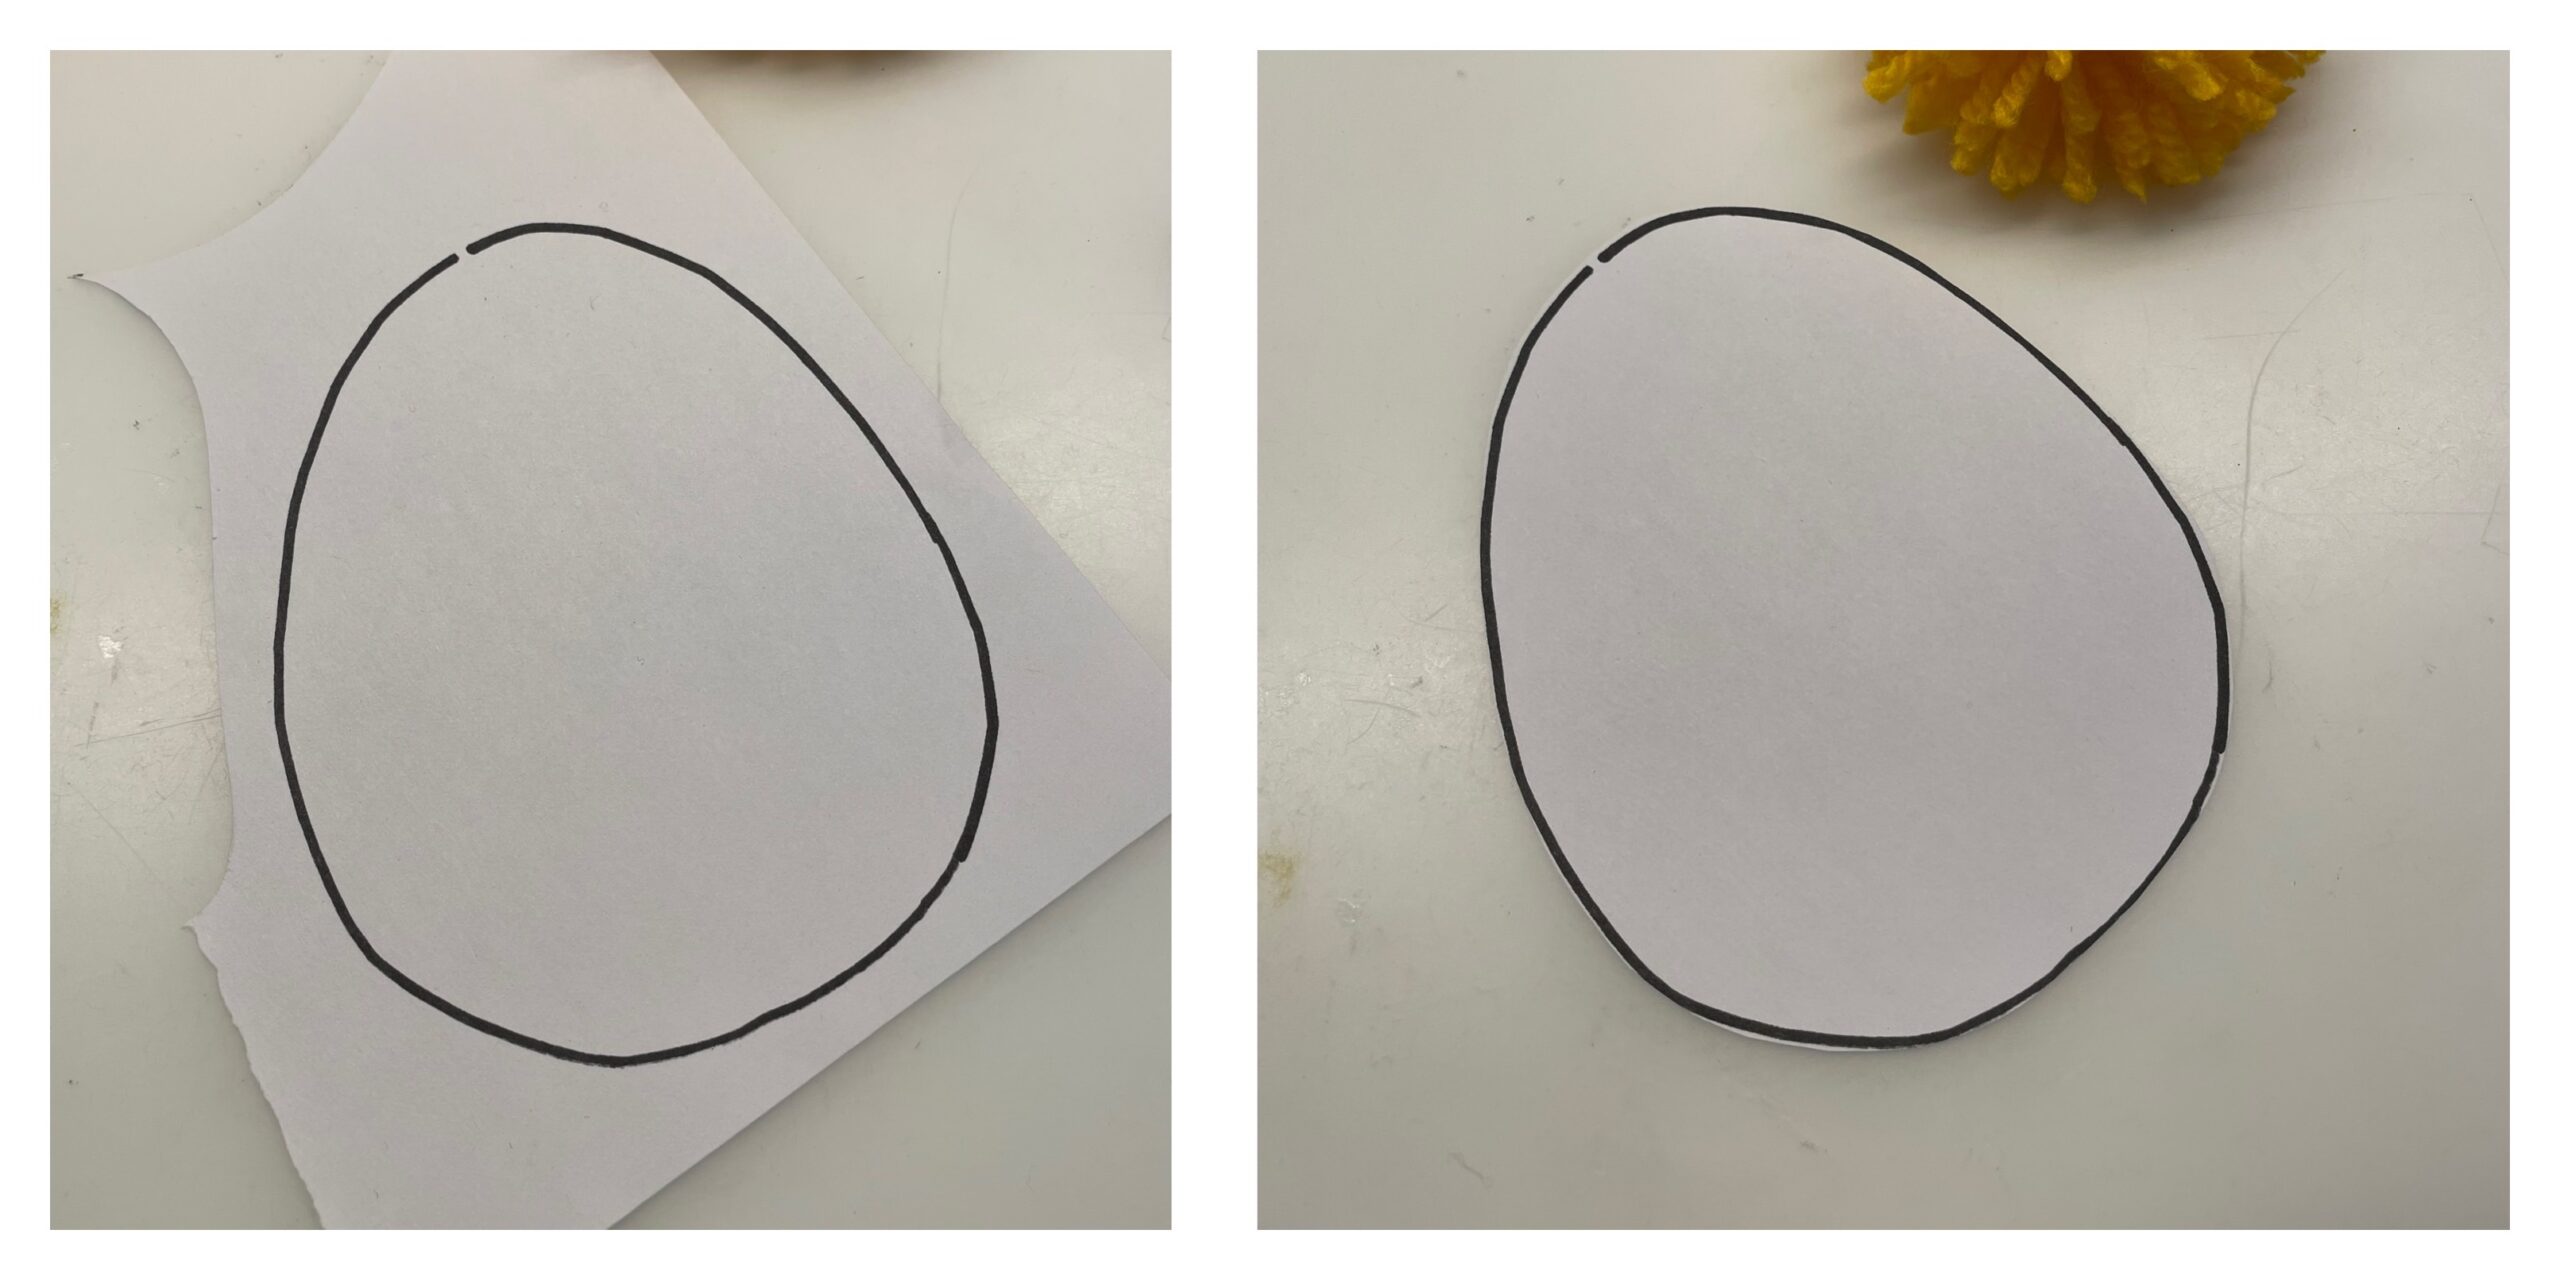 Bild zum Schritt 7 für die Kinder-Beschäftigung: 'Anschließend malt ihr auf einen weißen Fotokarton ein Ei auf....'